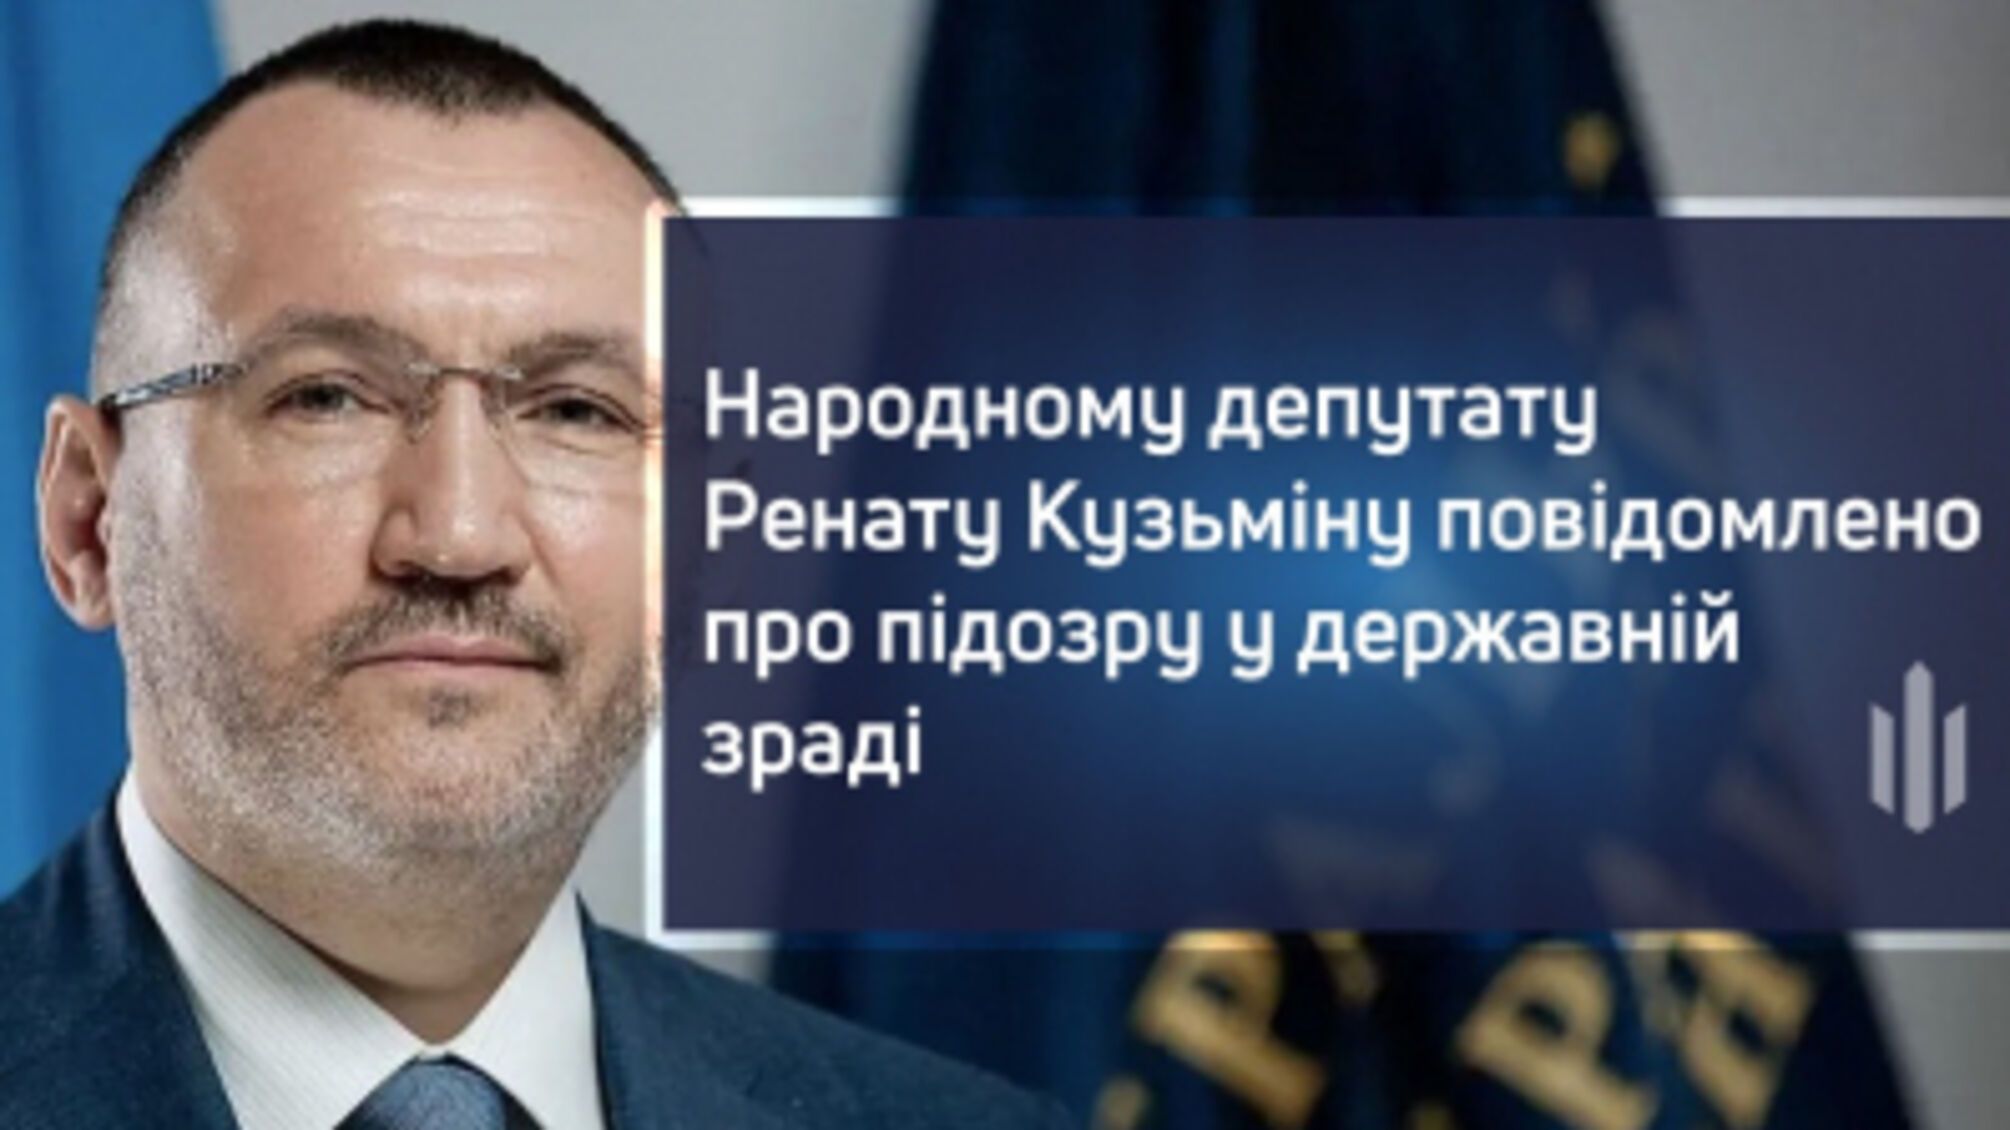 Нардепу Ренату Кузьміну повідомлено про підозру у державній зраді